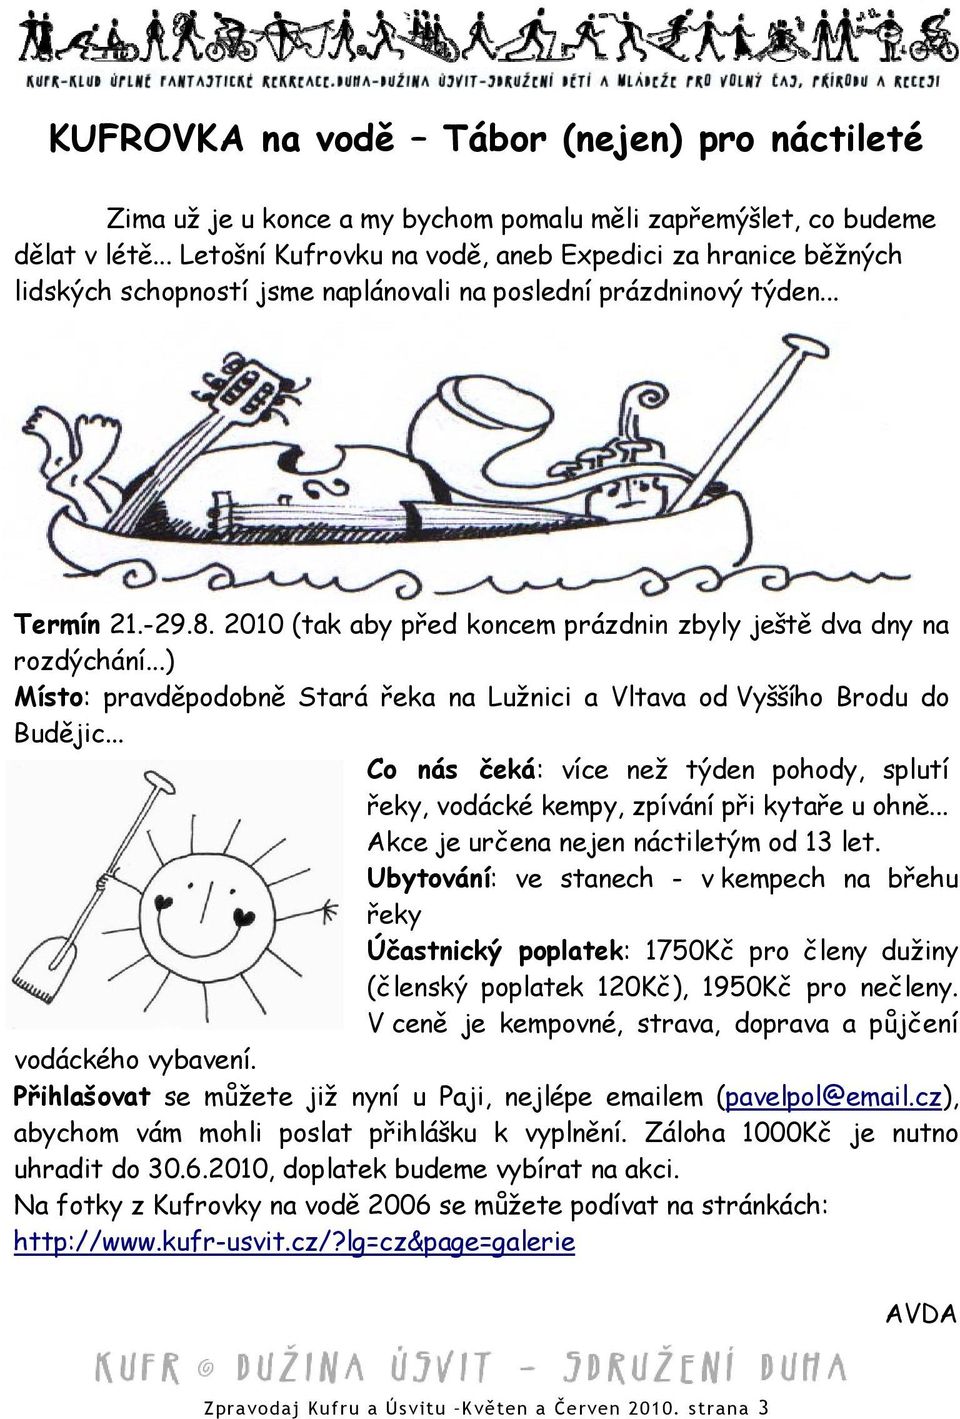 2010 (tak aby před koncem prázdnin zbyly ještě dva dny na rozdýchání...) Místo: pravděpodobně Stará řeka na Lužnici a Vltava od Vyššího Brodu do Budějic.